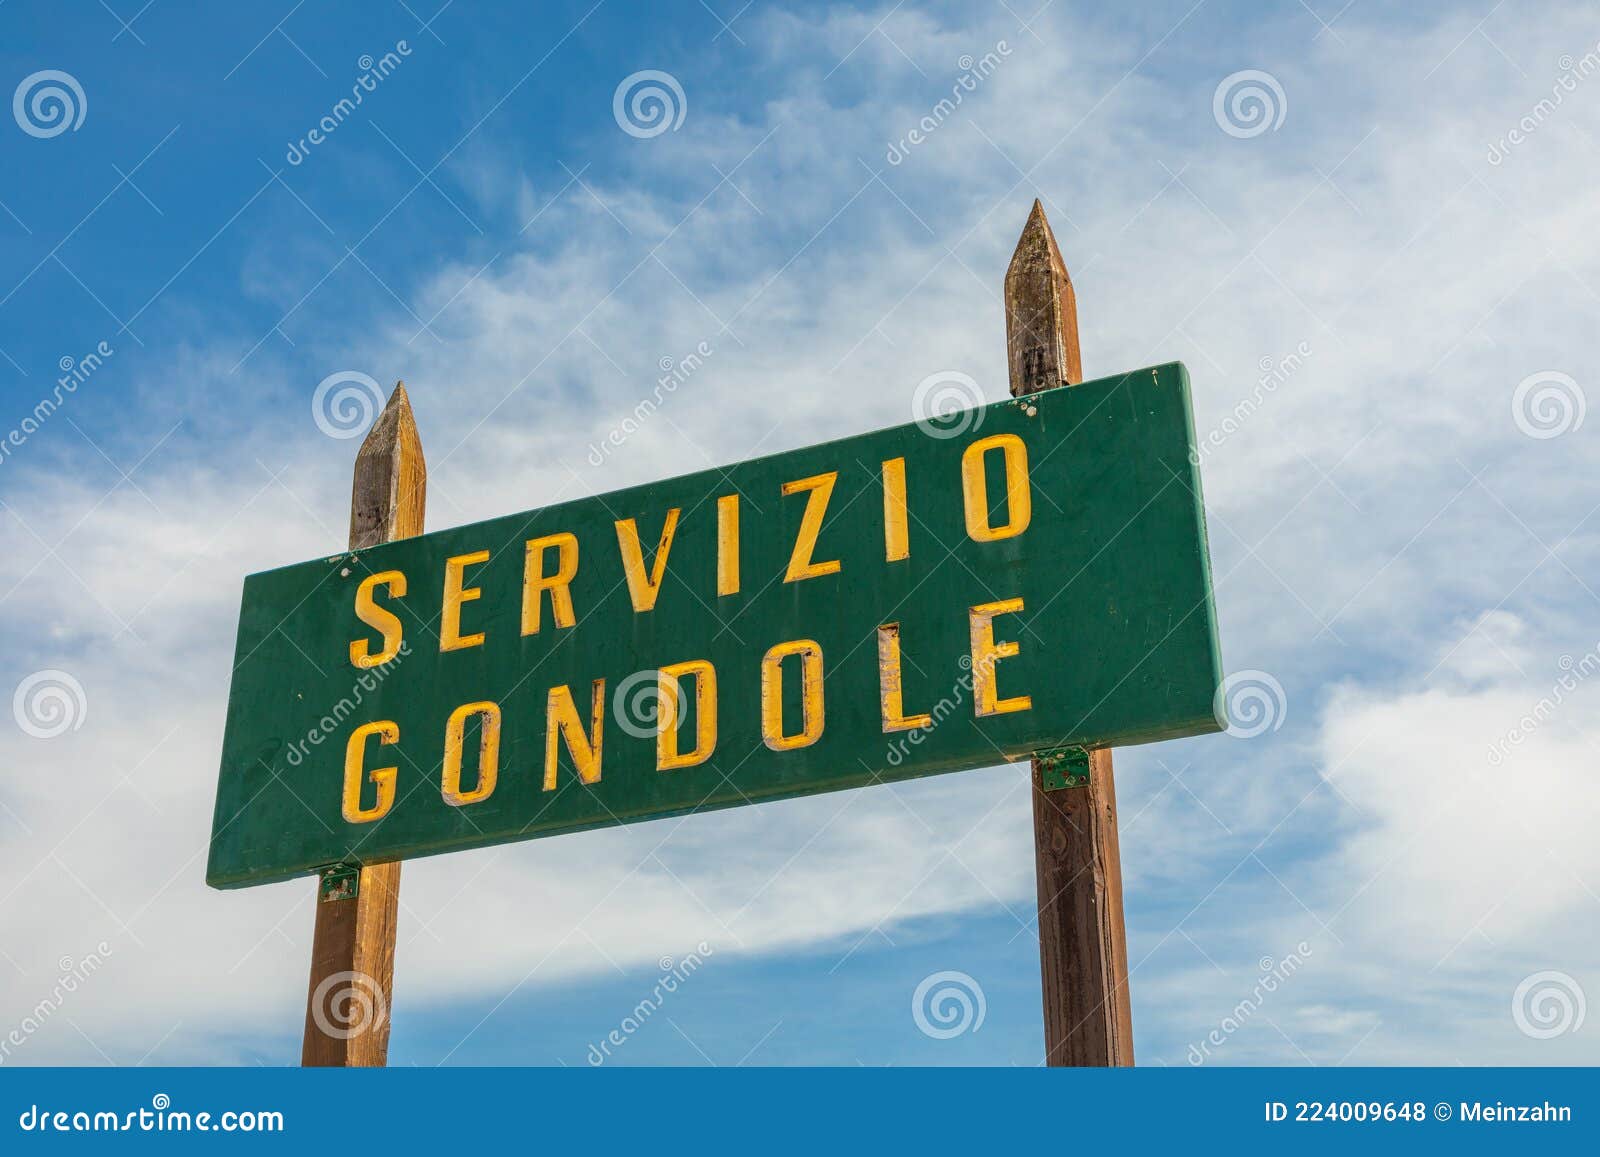 stop sign for gondolas and entering point - servicio gondole - gondola service